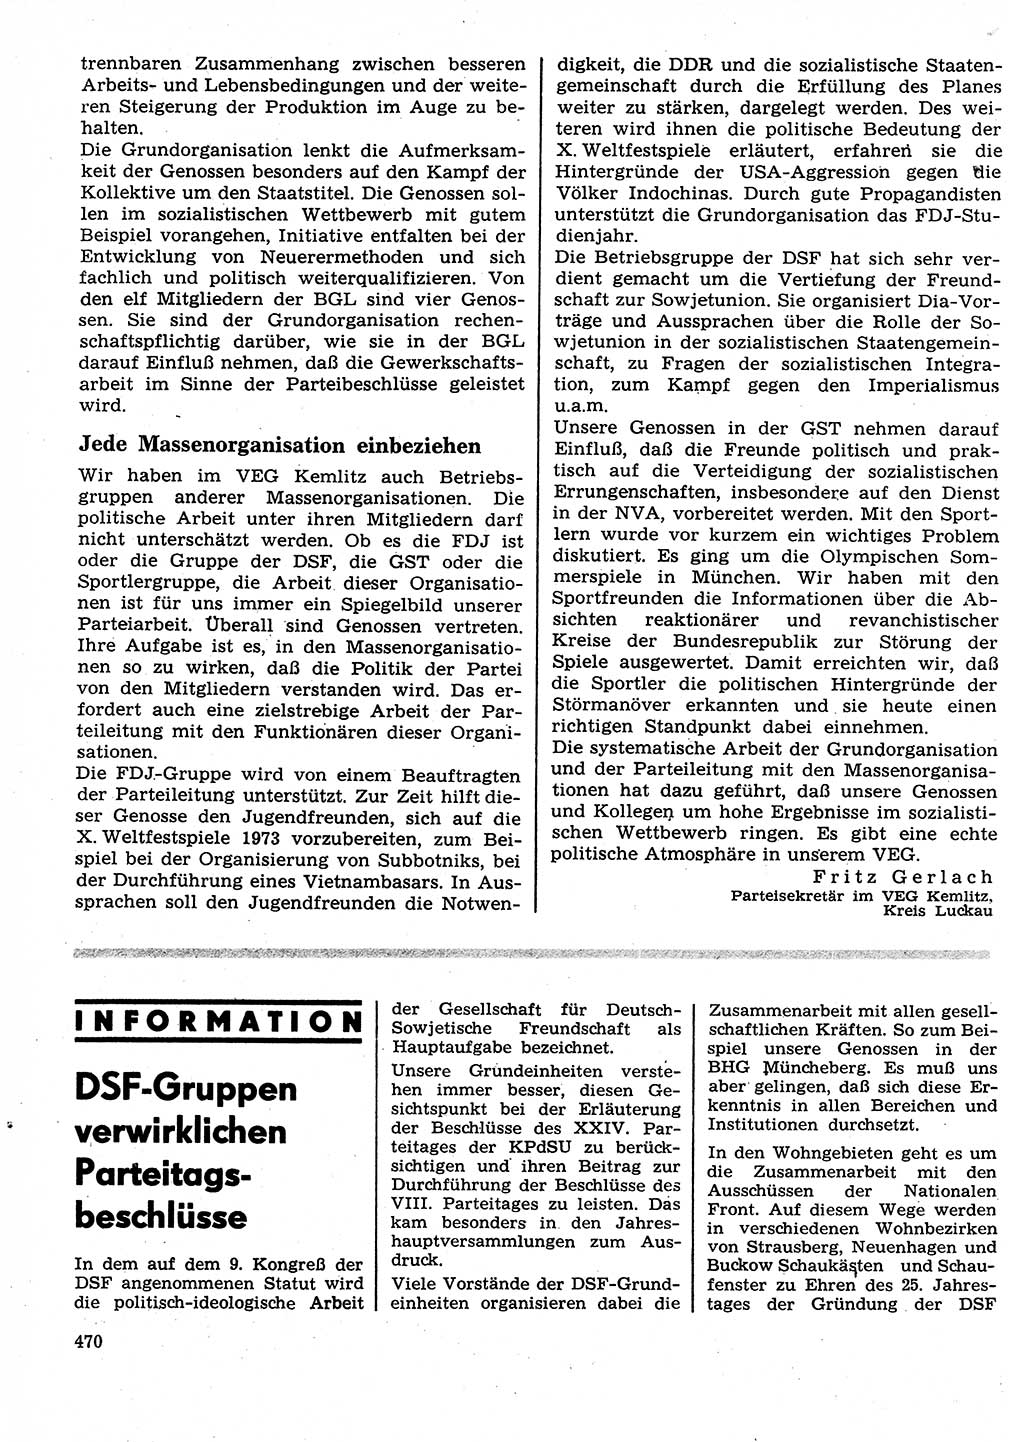 Neuer Weg (NW), Organ des Zentralkomitees (ZK) der SED (Sozialistische Einheitspartei Deutschlands) für Fragen des Parteilebens, 27. Jahrgang [Deutsche Demokratische Republik (DDR)] 1972, Seite 470 (NW ZK SED DDR 1972, S. 470)